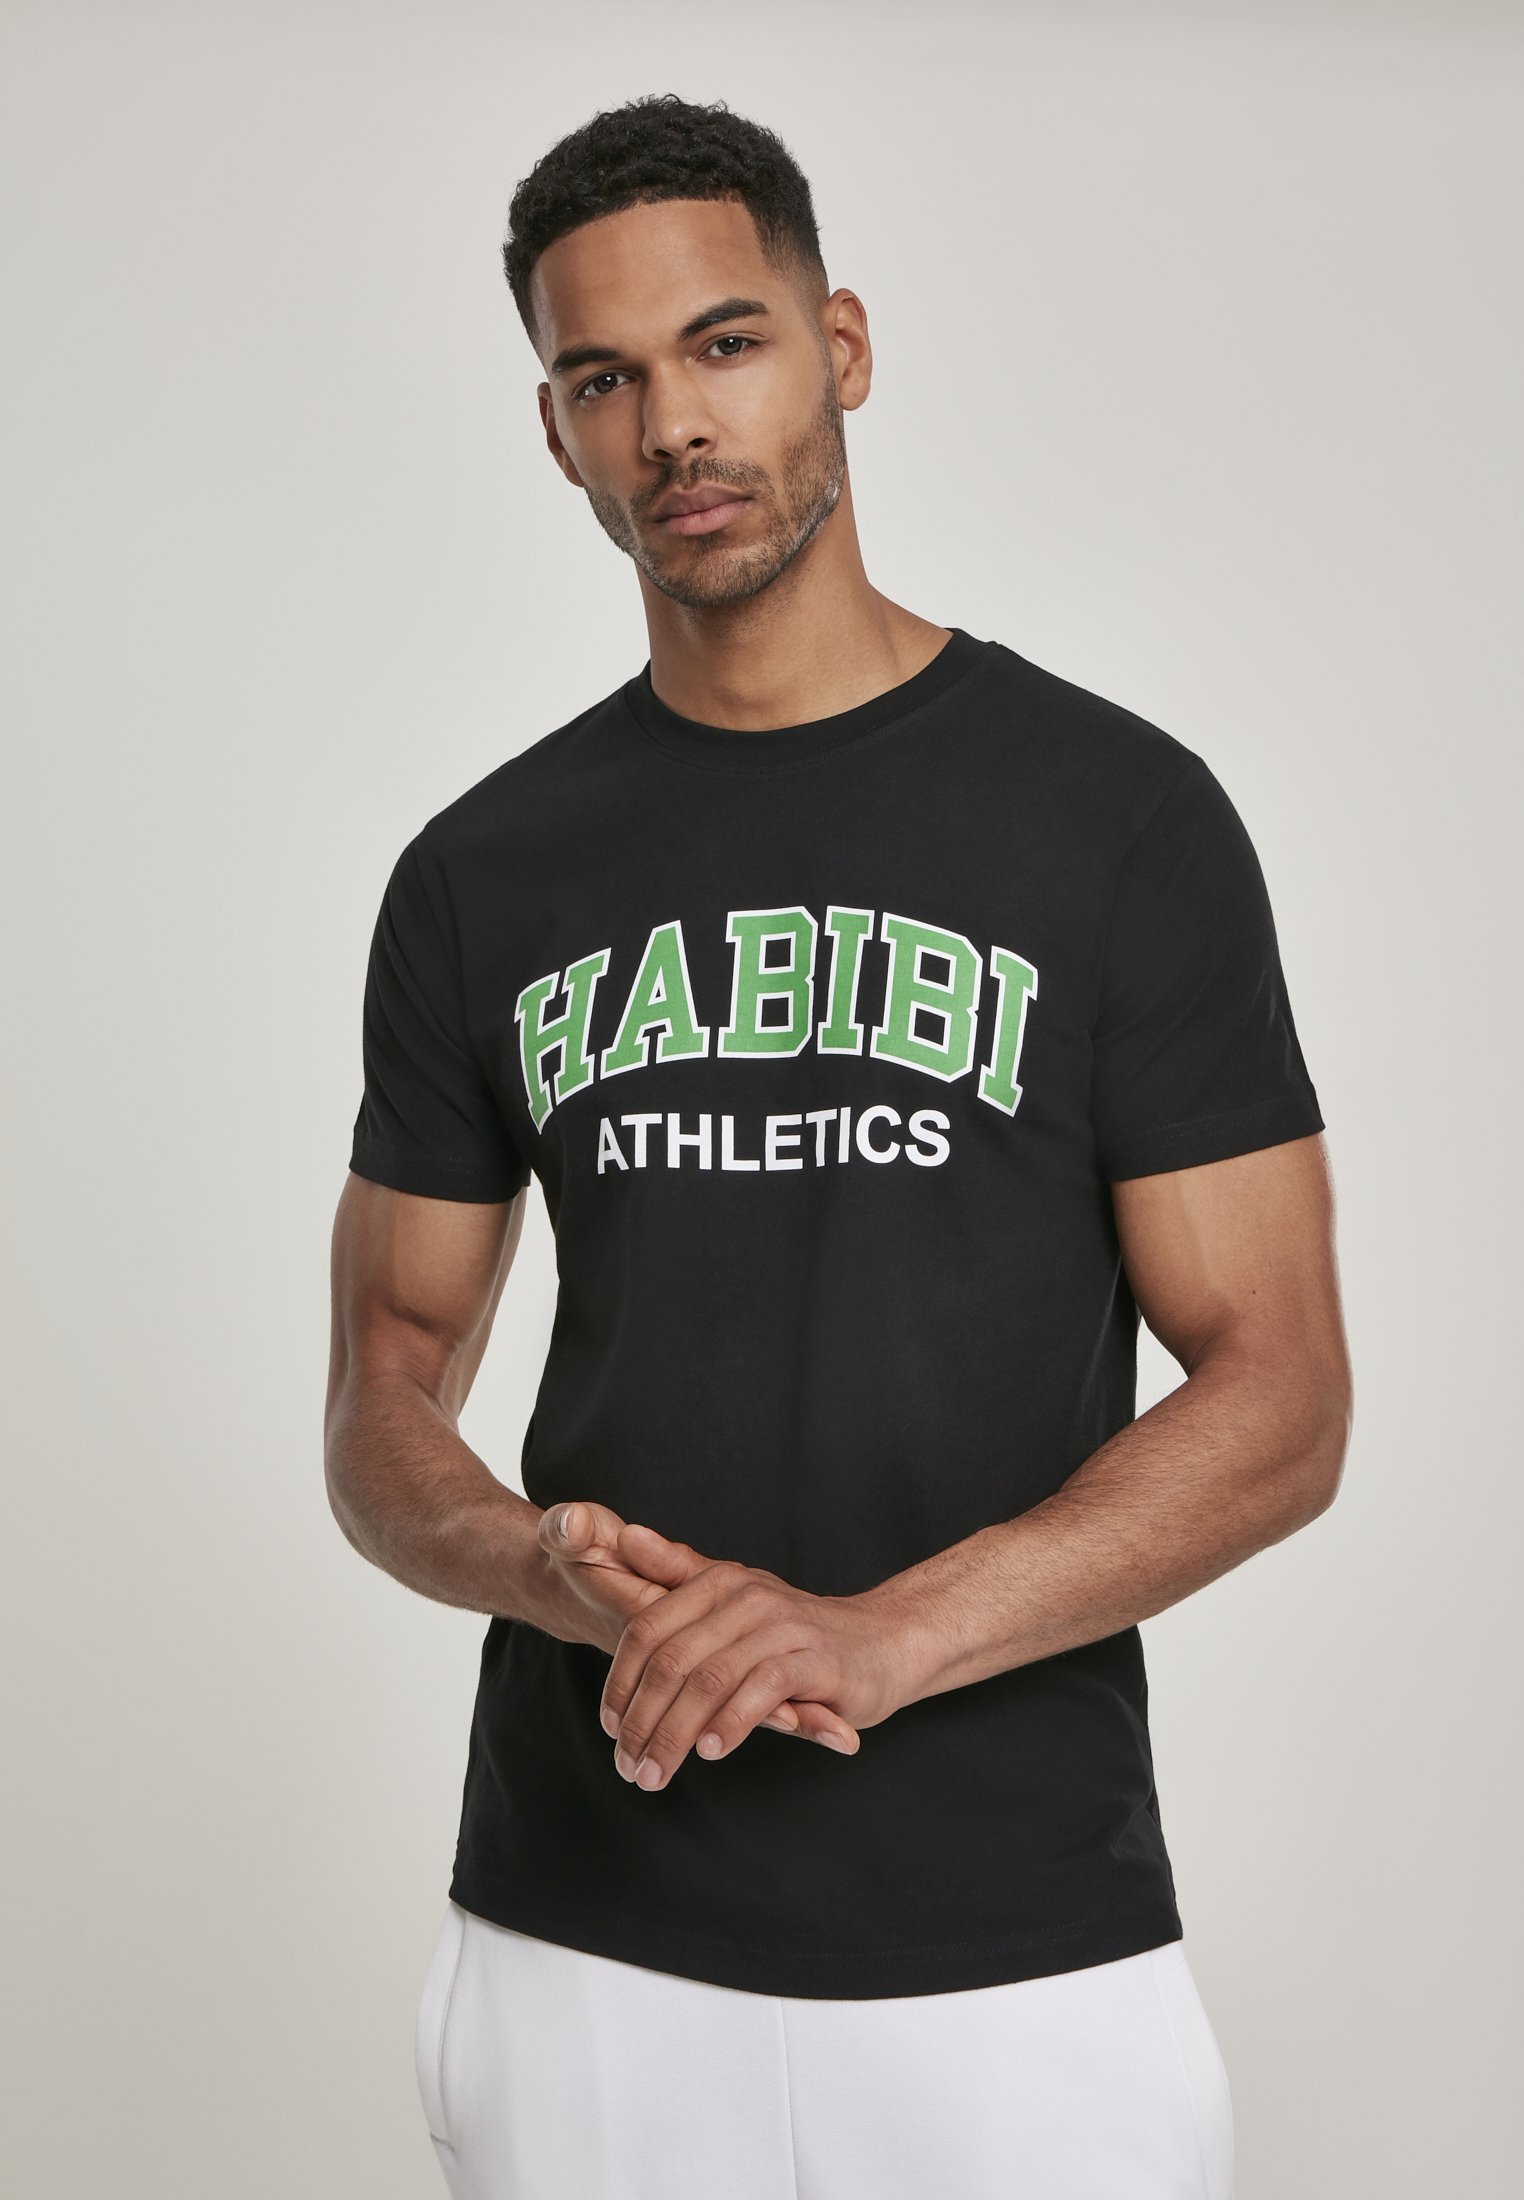 Habibi Athletics Black T-Shirt